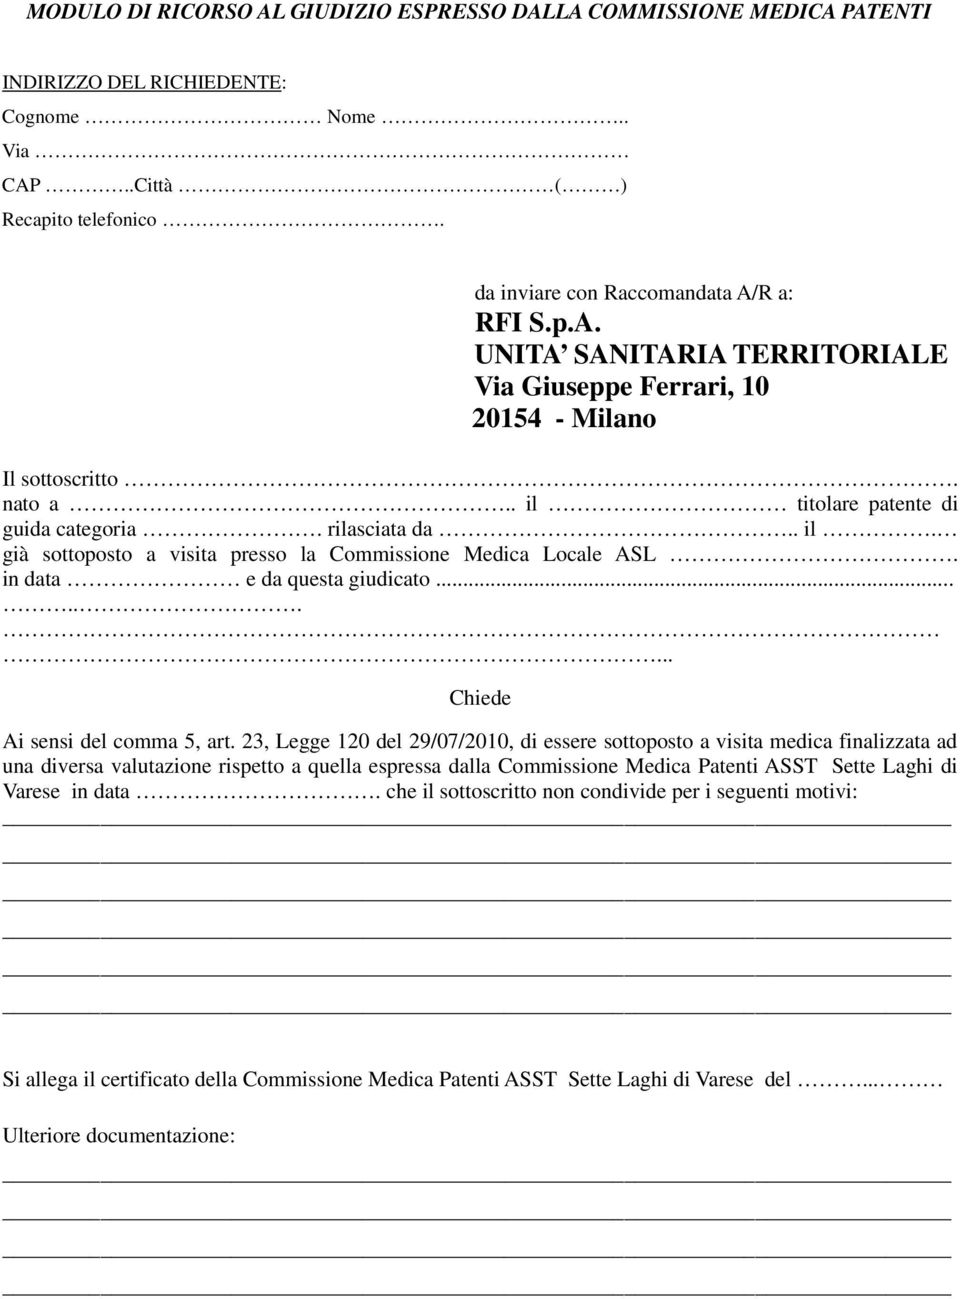 23, Legge 120 del 29/07/2010, di essere sottoposto a visita medica finalizzata ad una diversa valutazione rispetto a quella espressa dalla Commissione Medica Patenti ASST Sette Laghi di Varese in